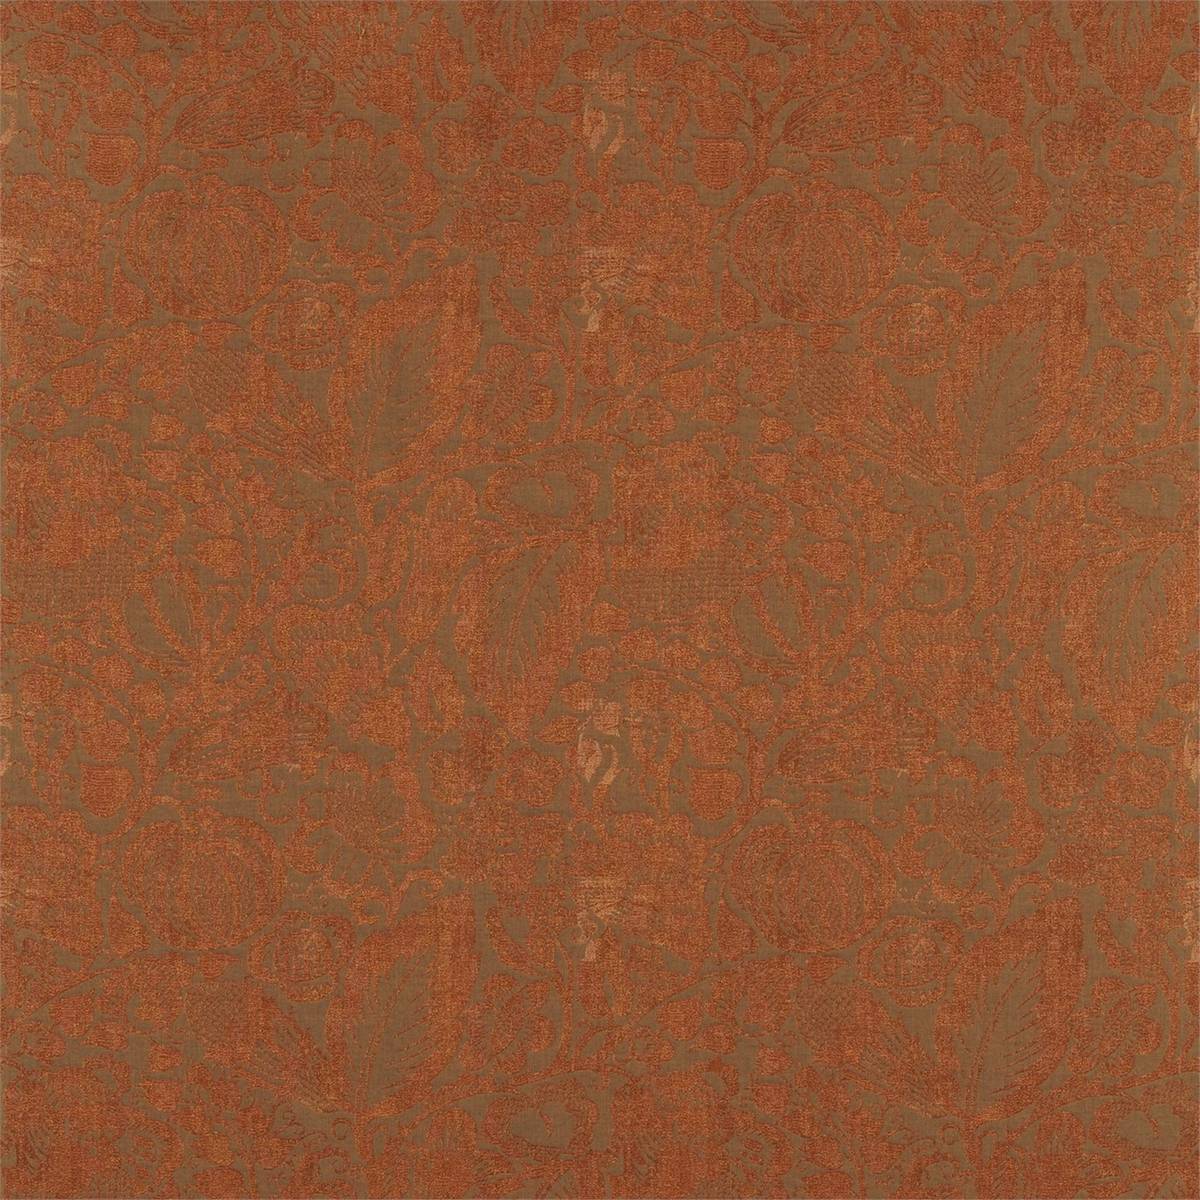 Granada Copper Fabric by Zoffany